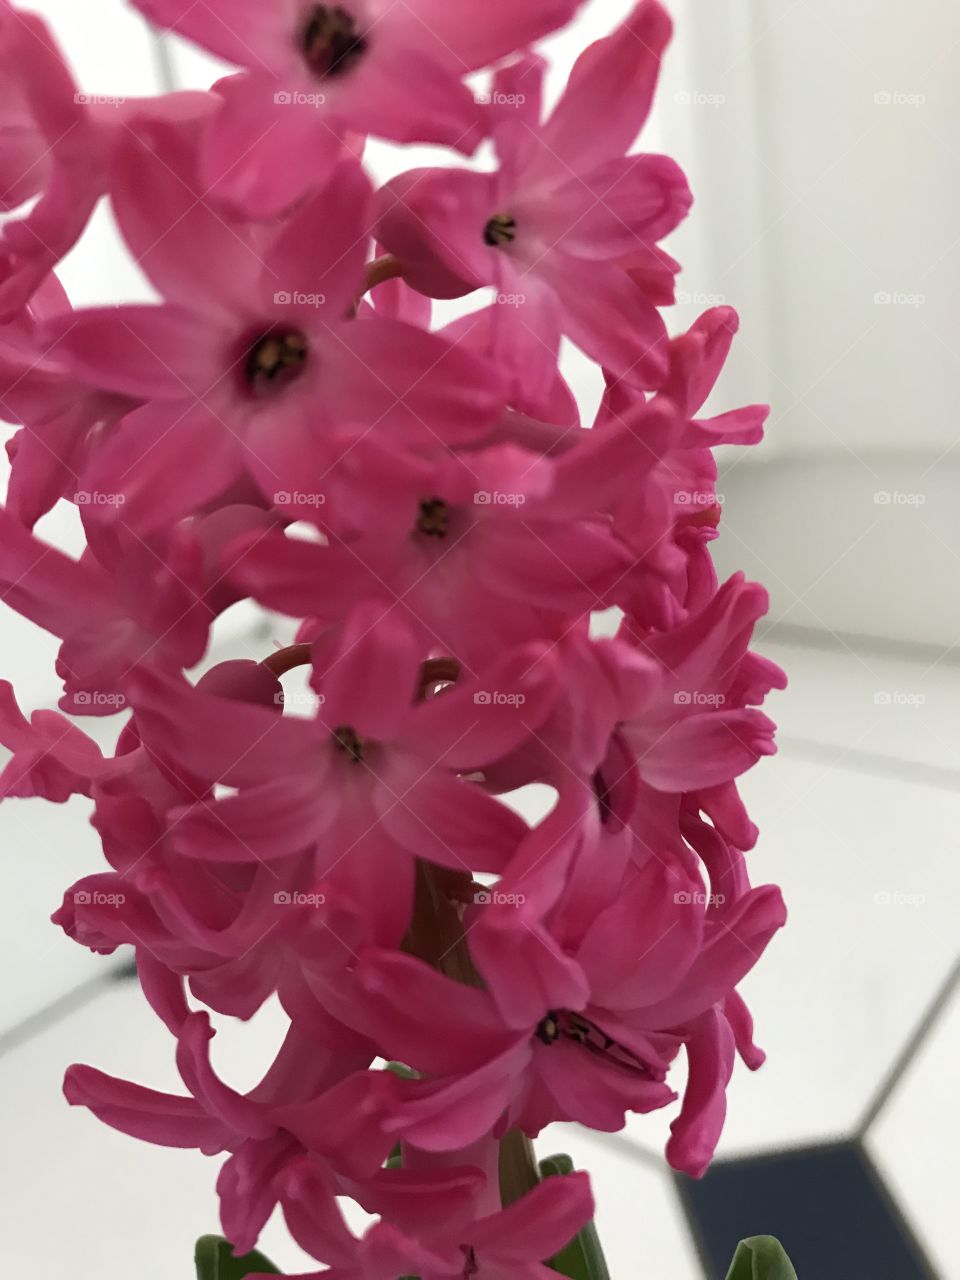 Hyacinth blooms